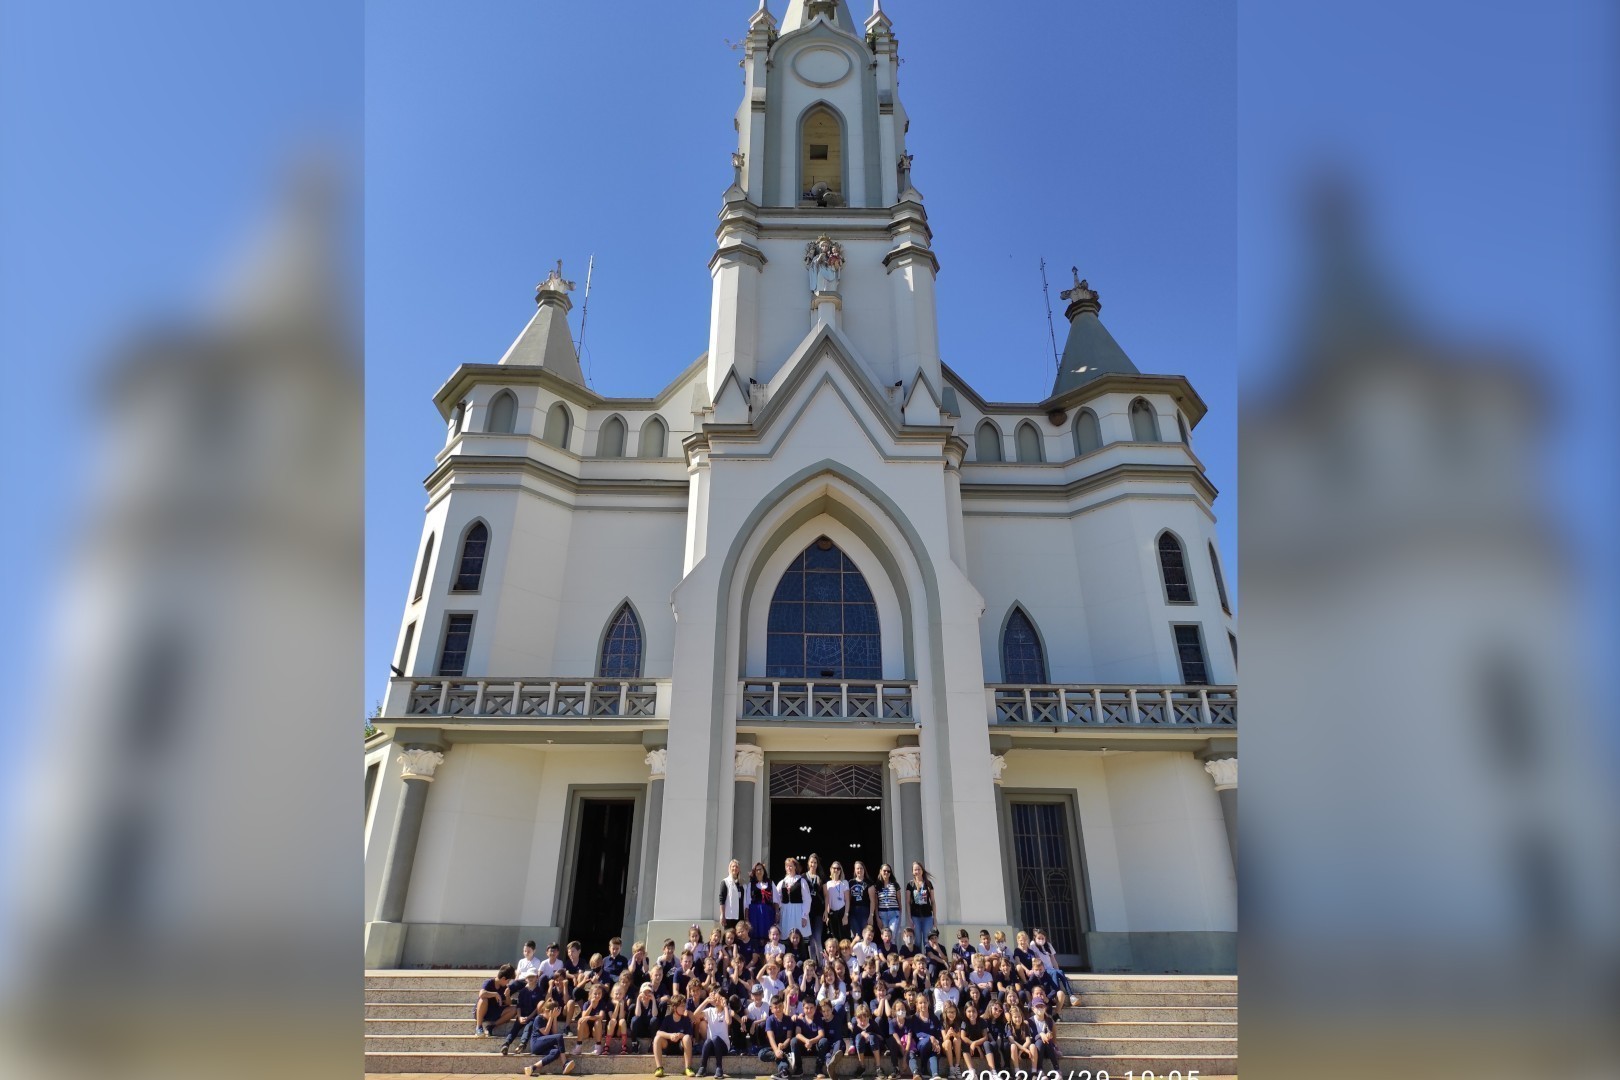 Igreja de Áurea fez parte do passeio de estudos “Caminhos Poloneses”